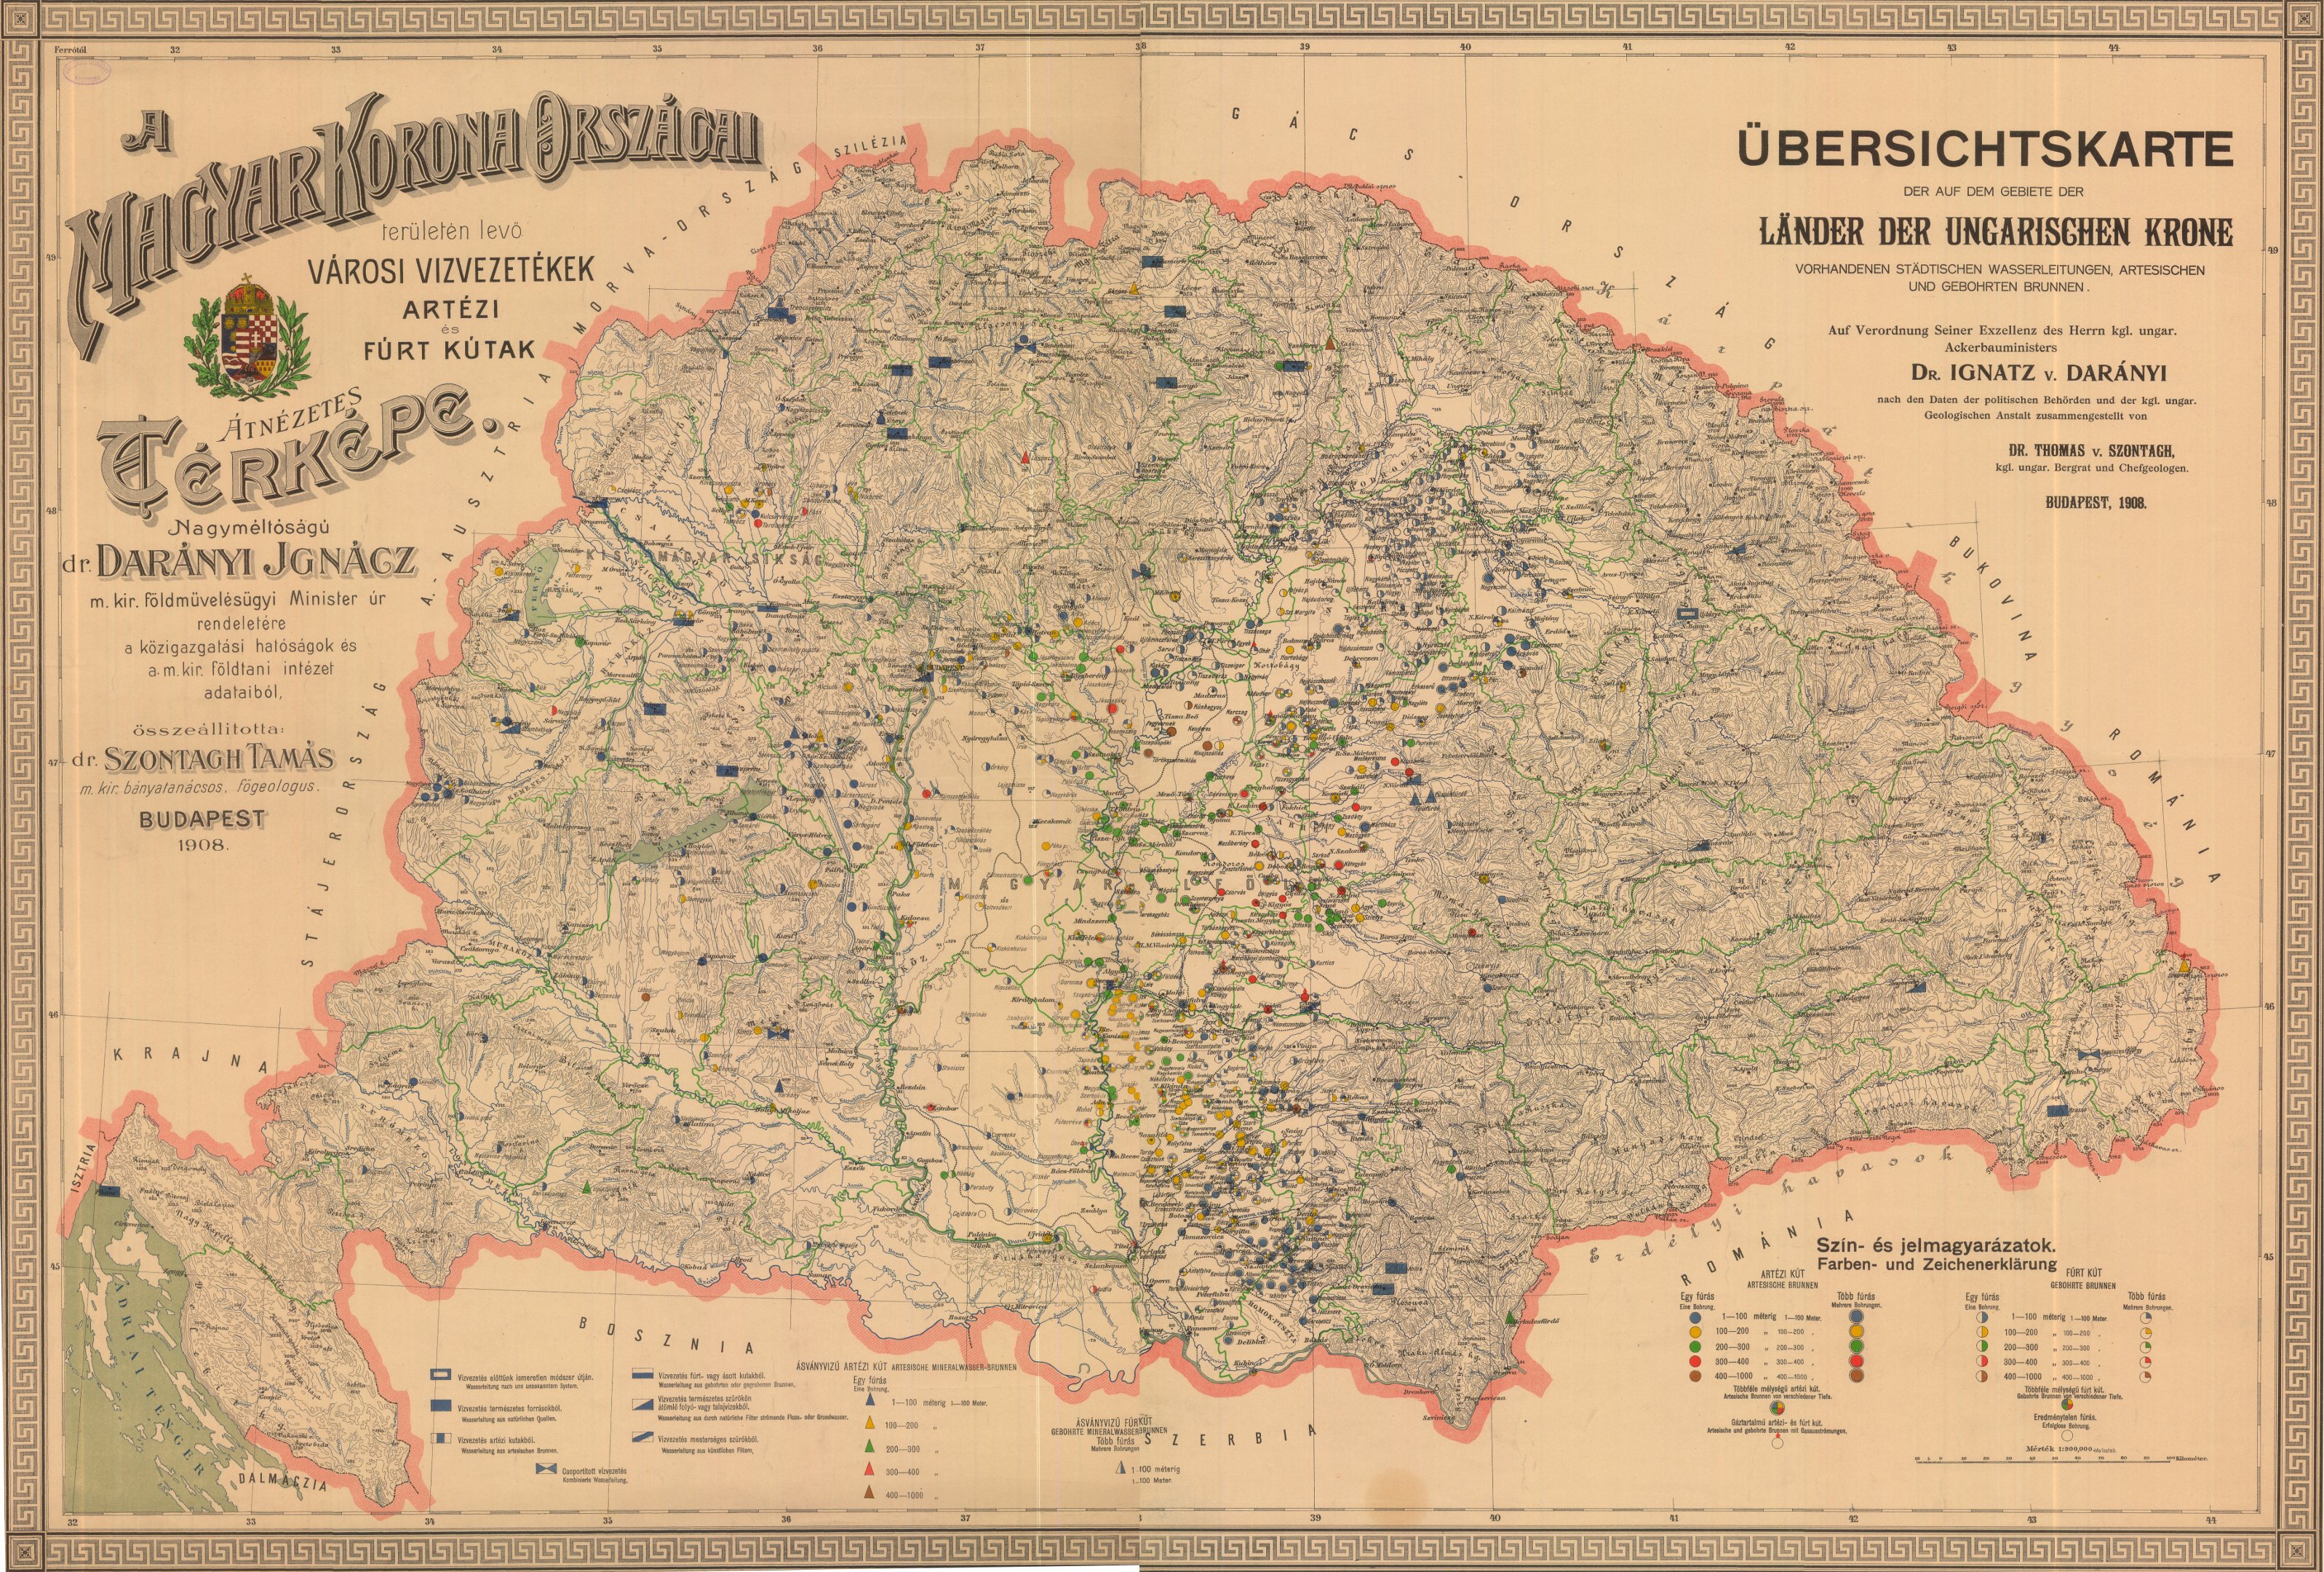 A Magyar Korona országai területén lévő városi vízvezetékek, artézi és fúrt kutak átnézetes térképe (Magyar Környezetvédelmi és Vízügyi Múzeum - Duna Múzeum CC BY-NC-SA)